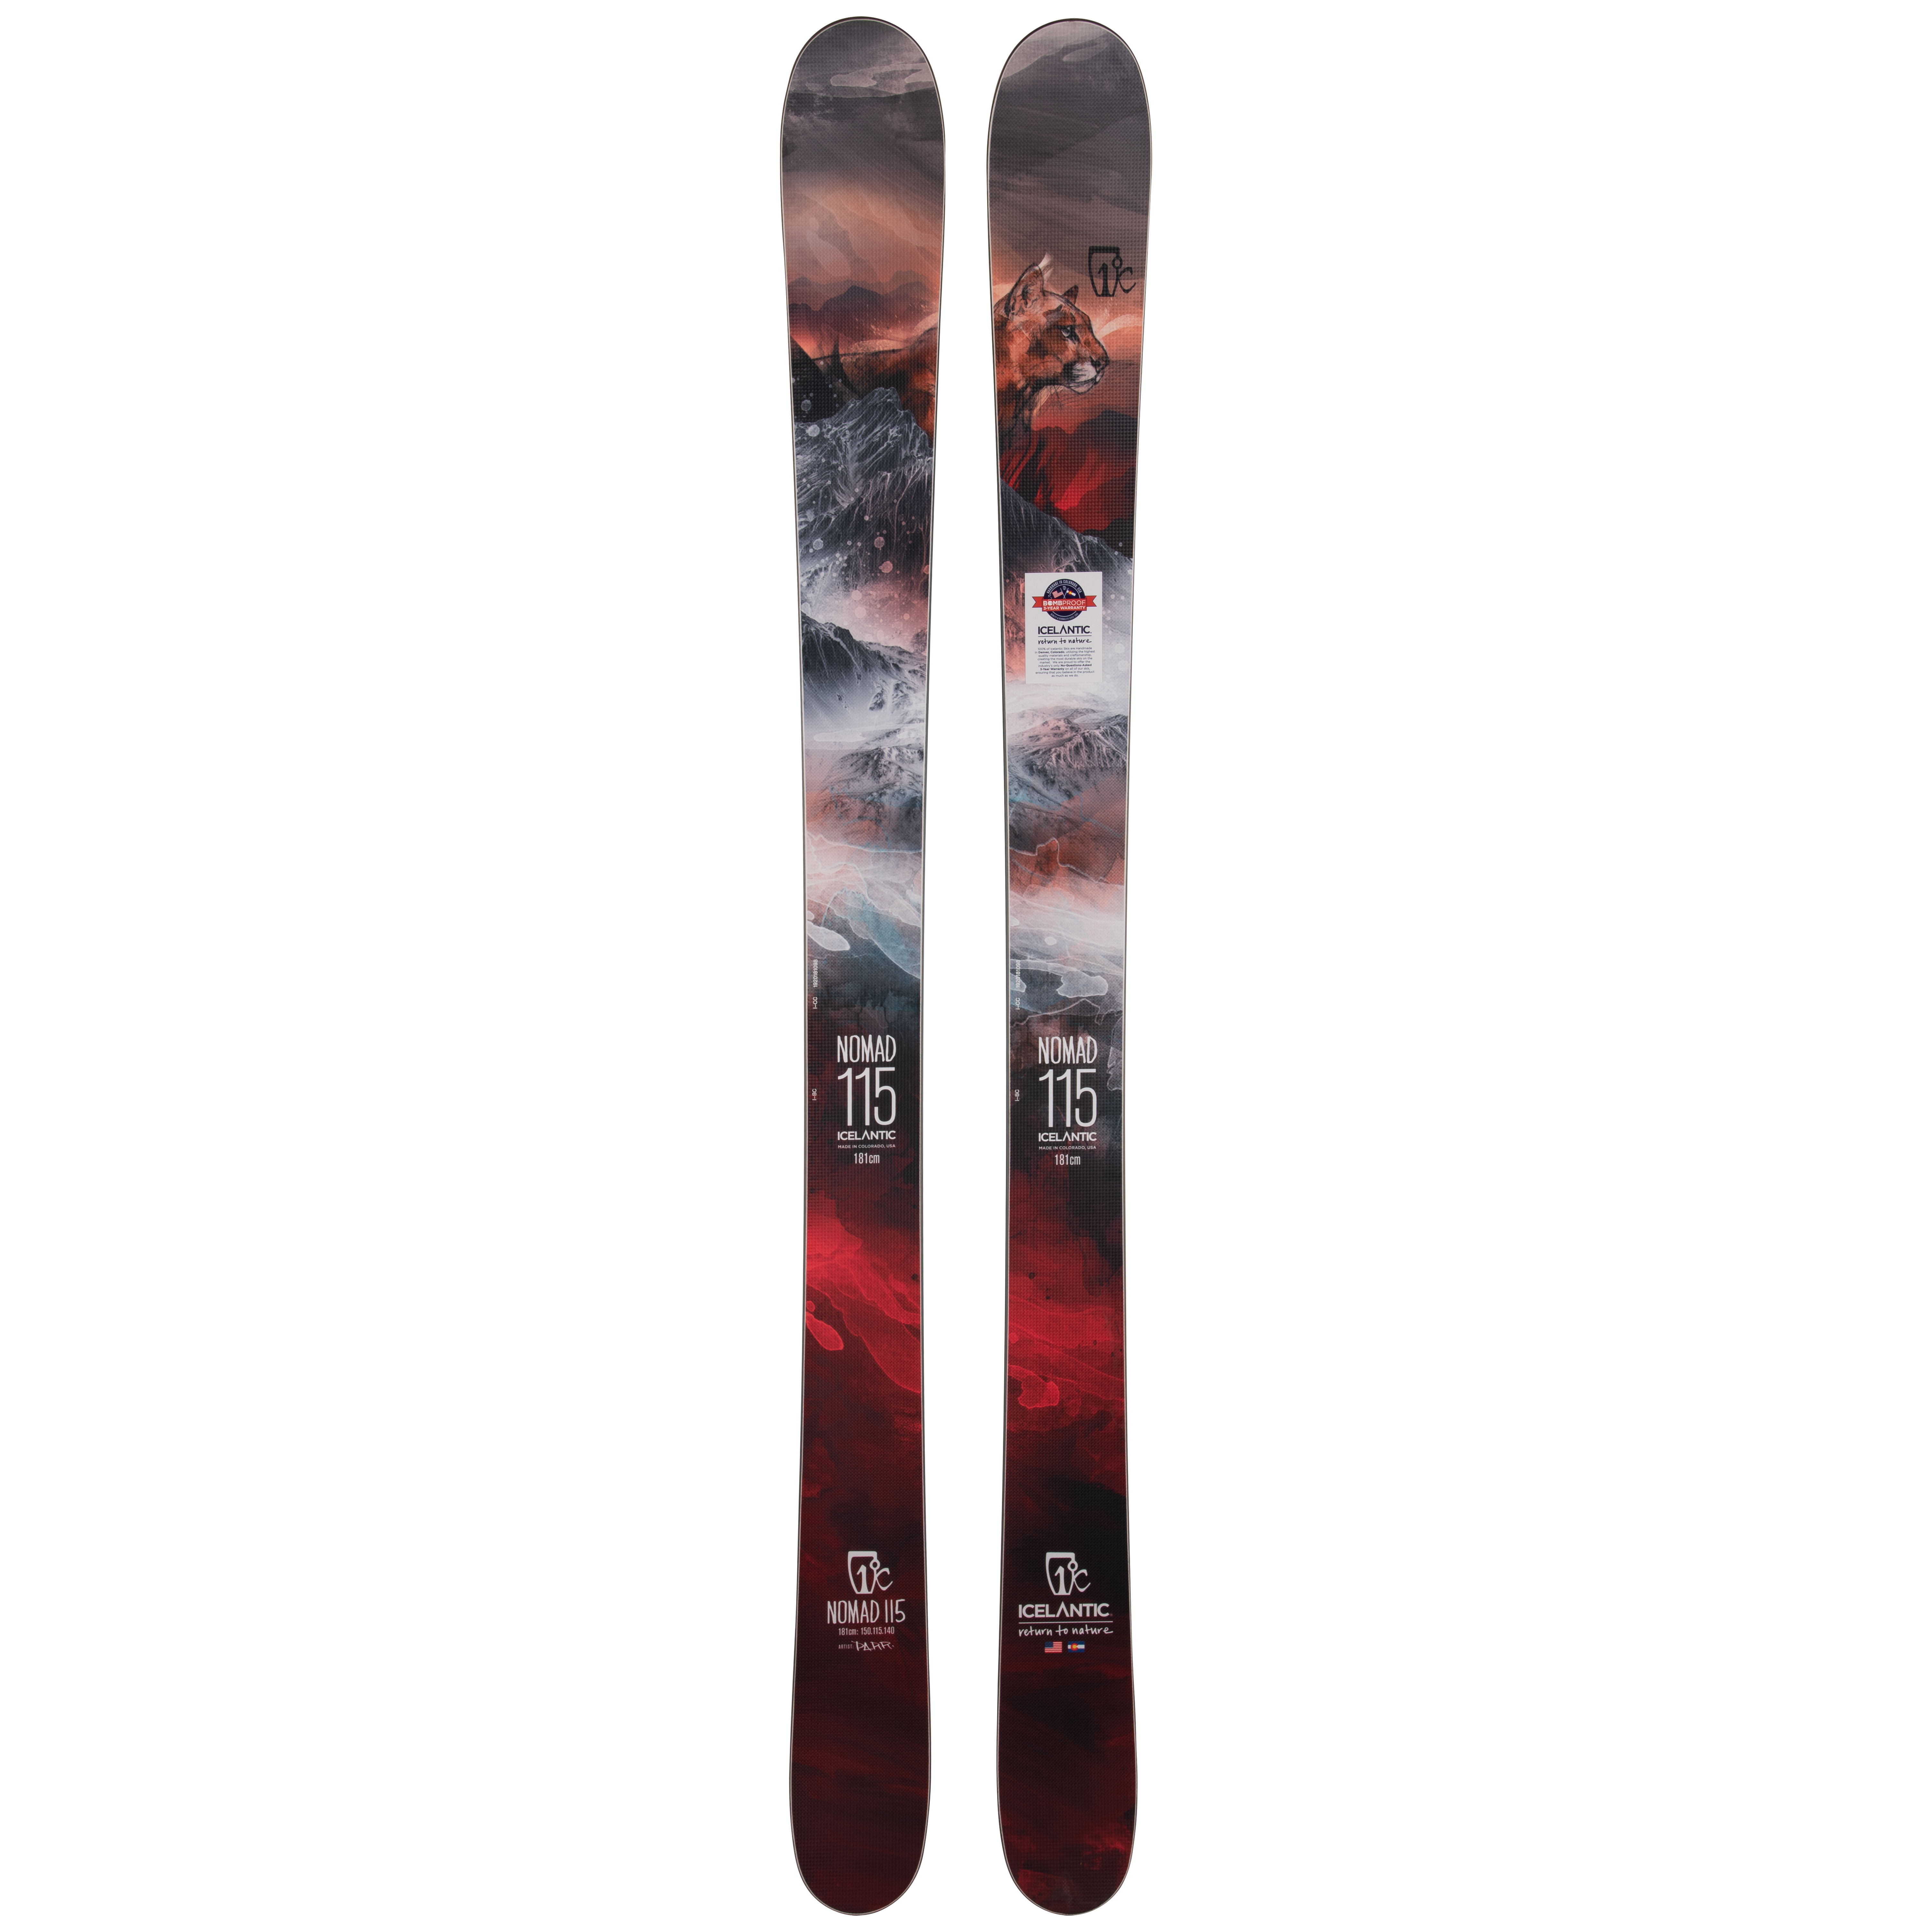 Лыжи для профессионалов Icelantic Nomad 115 2019/2020 181cm